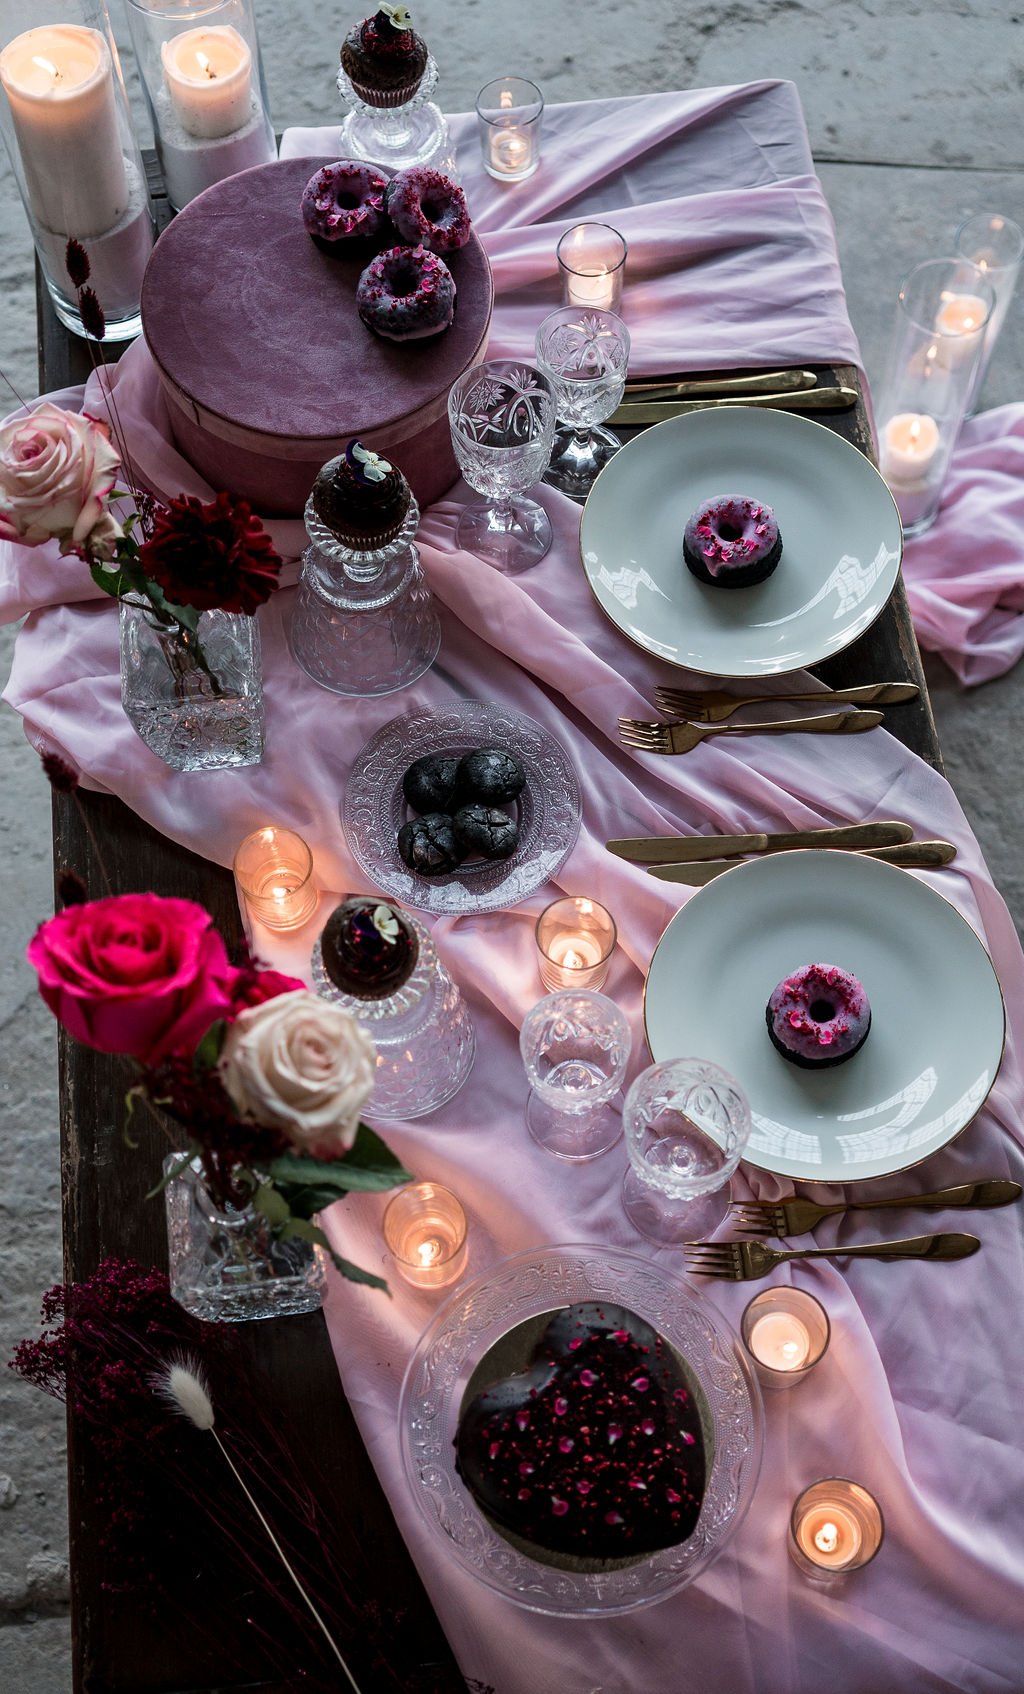 modern industrial wedding - alternative wedding - unconventional wedding - edgy wedding - pink wedding table - relaxed wedding table styling - modern wedding styling